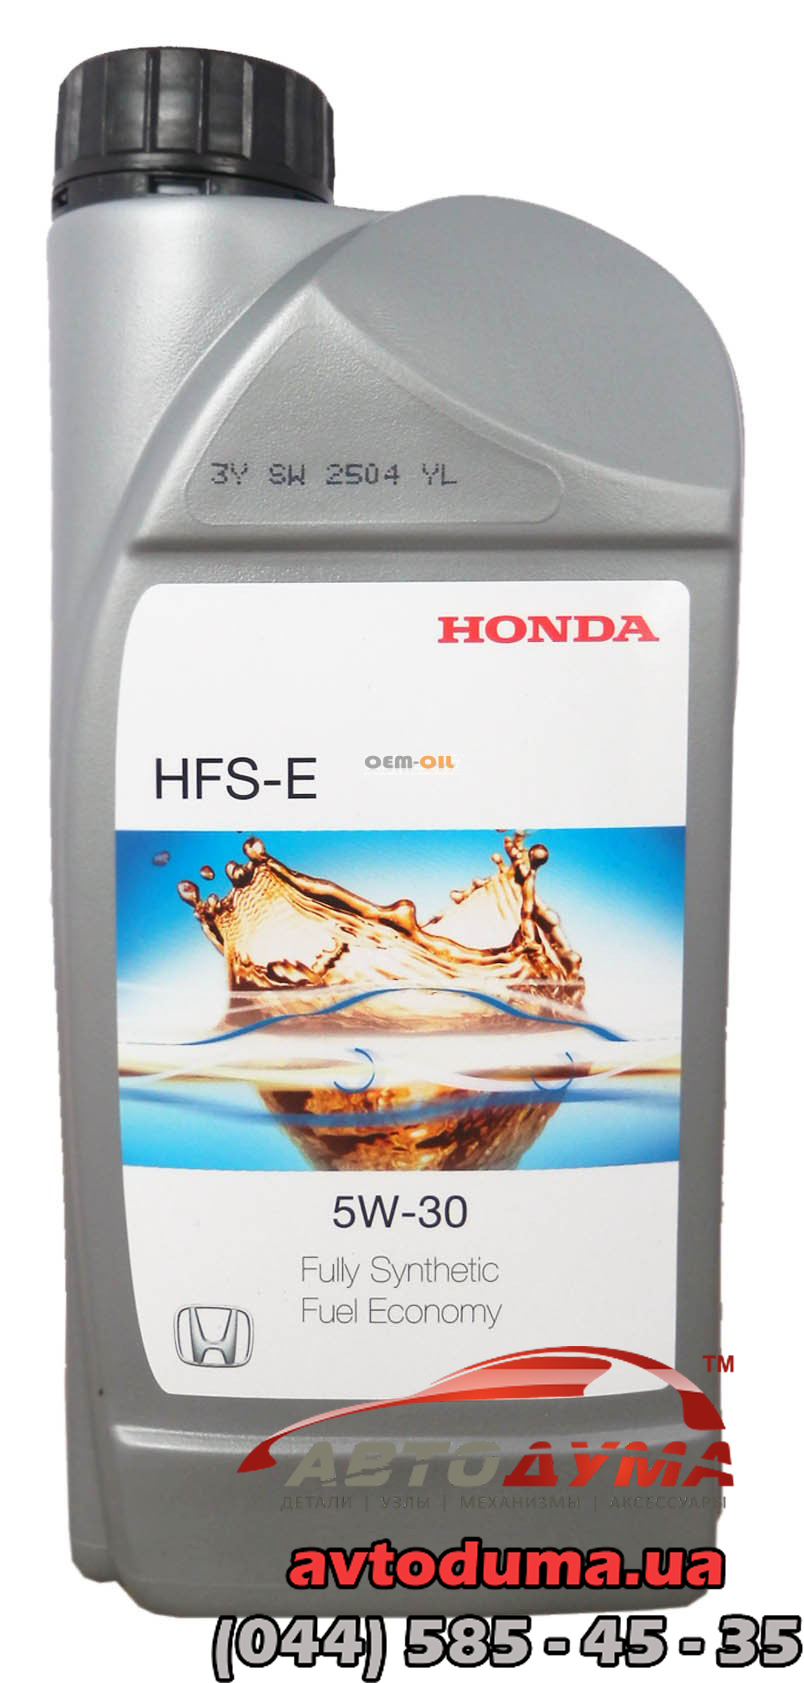 Honda HFS-E 5W-30, 1л